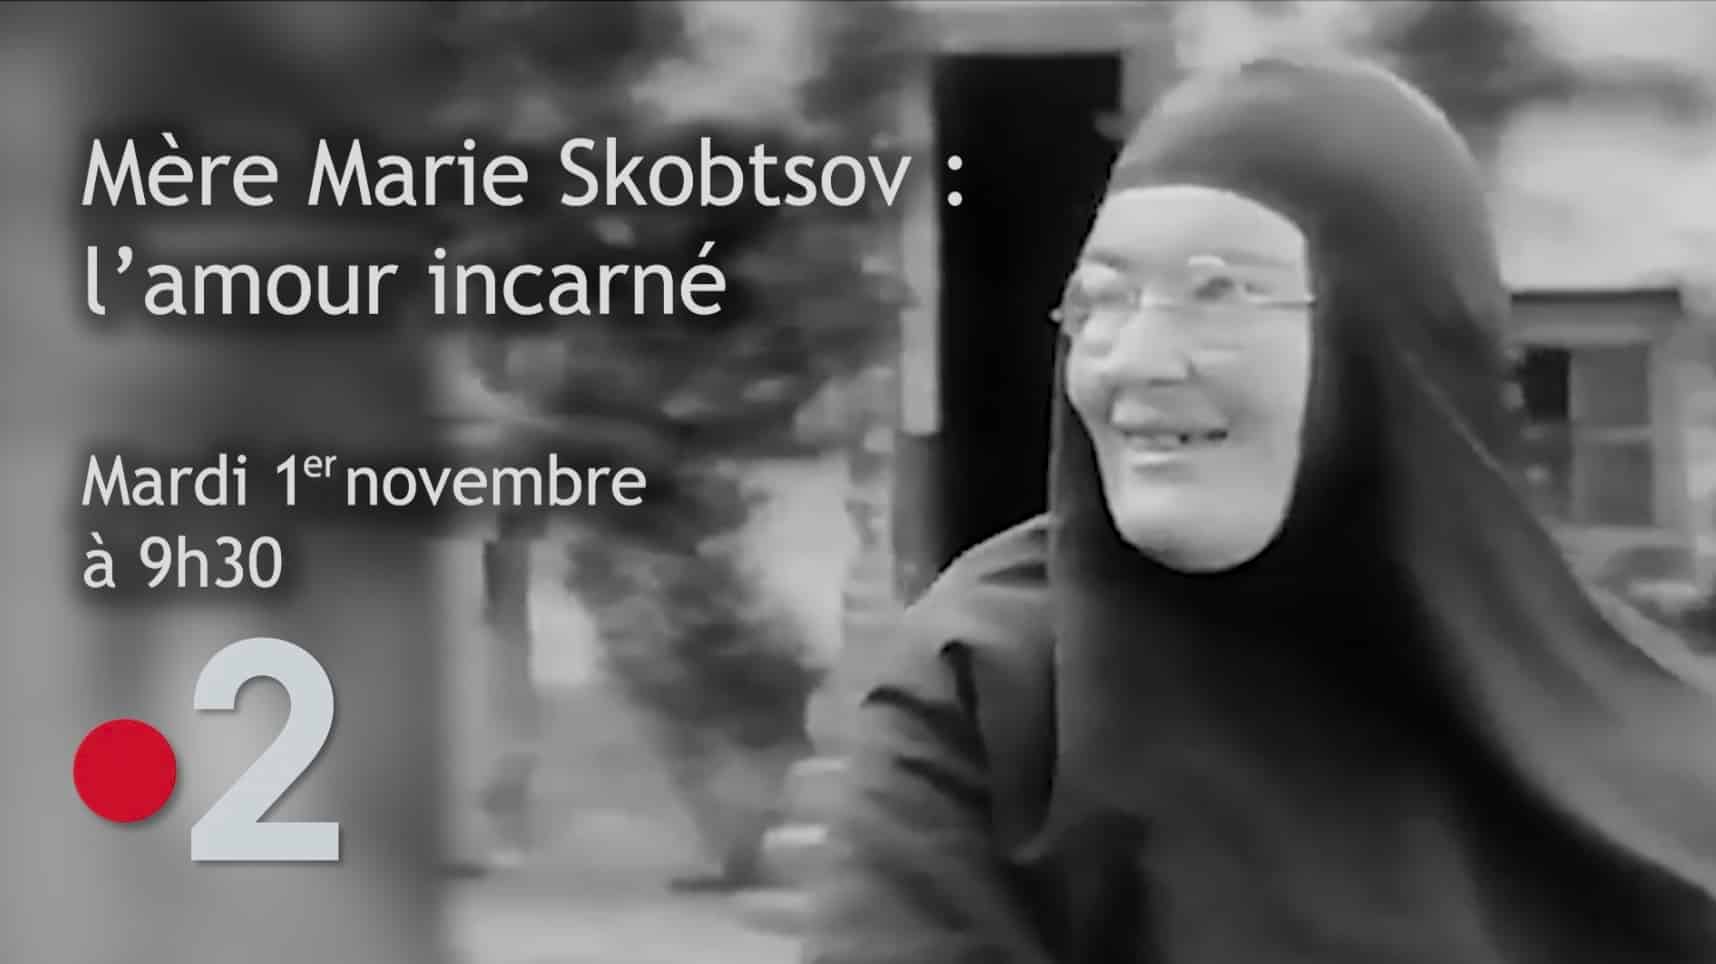 Bande-annonce du documentaire « mère marie skobtsov : l’amour incarné » – mardi 1er novembre à 9h30 sur france 2